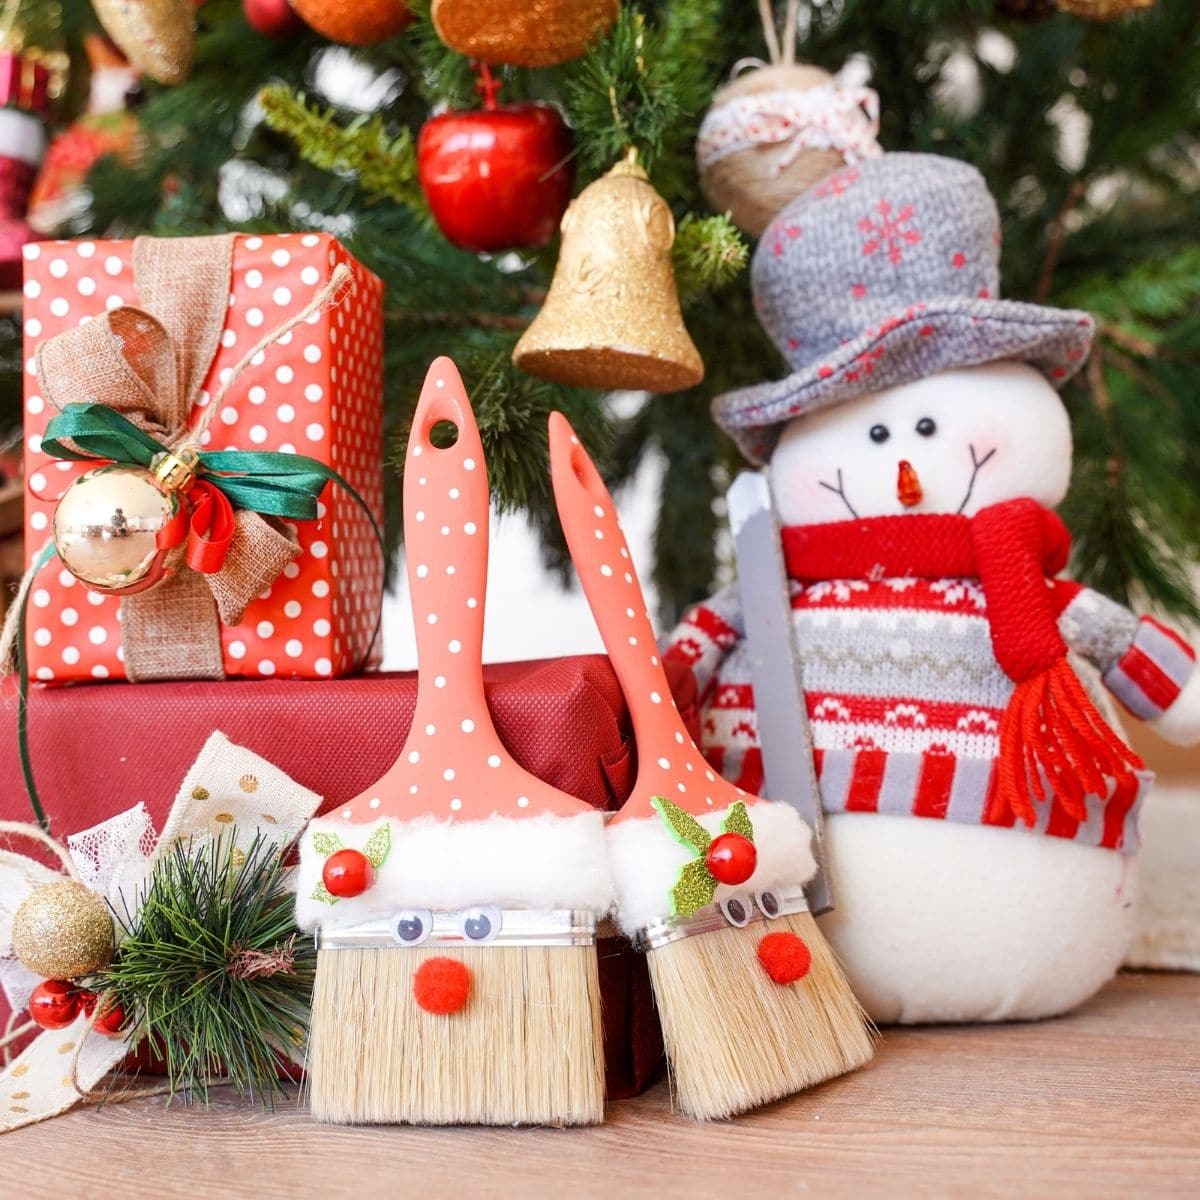 Božičkova dekoracija s čopičem pod božičnim drevesom